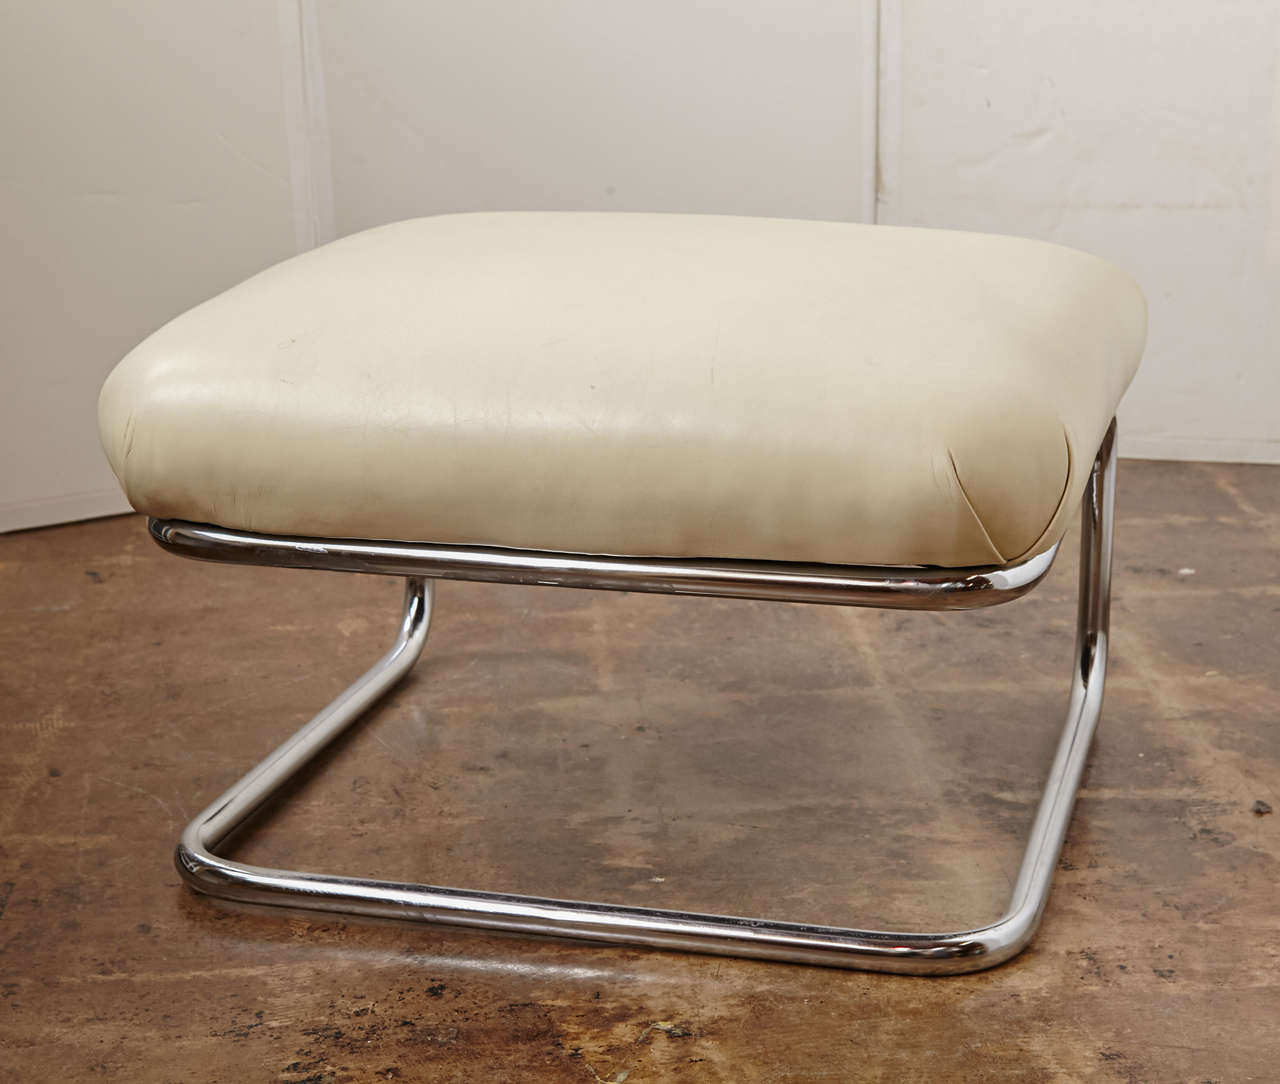 Royalchrome / Howell Art Deco Tubular Lounge Chair & Ottoman 1